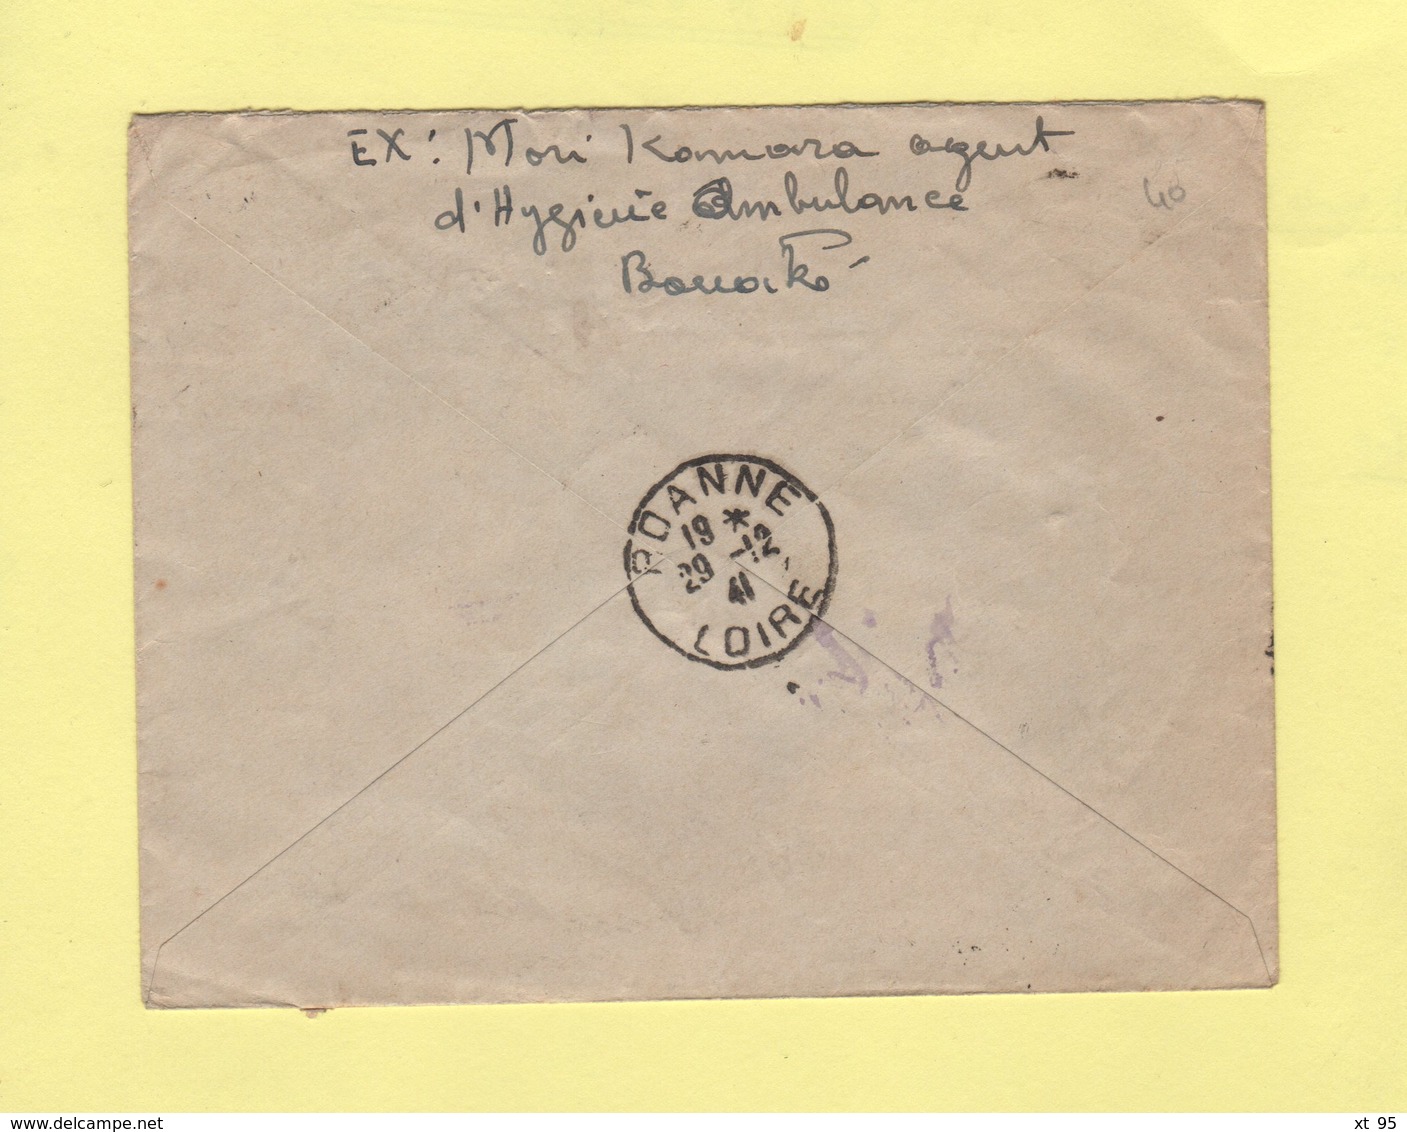 Cote D'Ivoire - Bouake - 27 Nov 1941 - Taxe De Poste Restante A Roanne Loire 30-12-1941 - Lettres & Documents